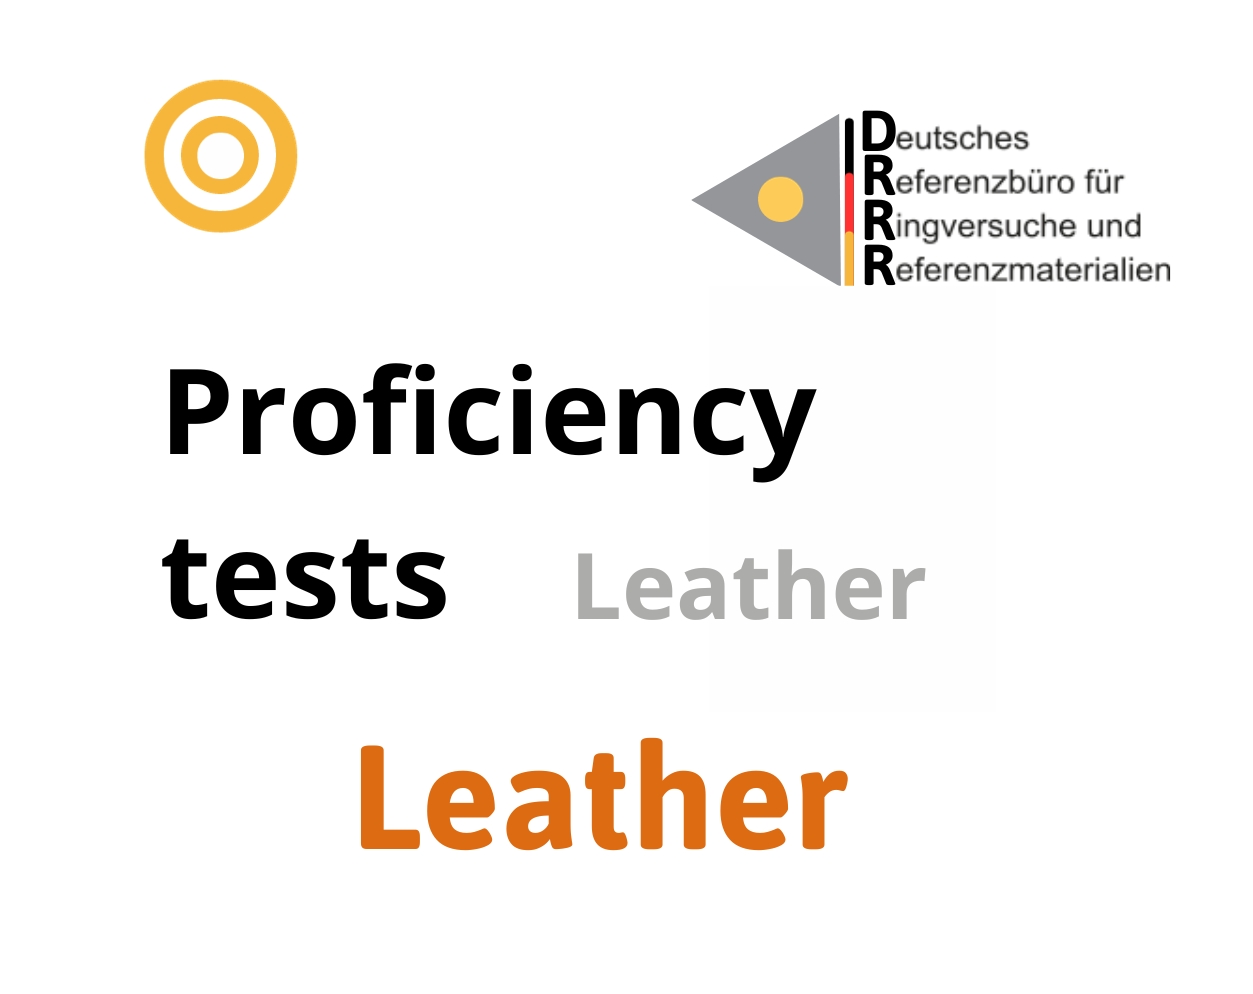 Thử nghiệm thành thạo (ISO 17043) các thông số trên mẫu thuộc da (Leather), Hãng DRRR, Đức